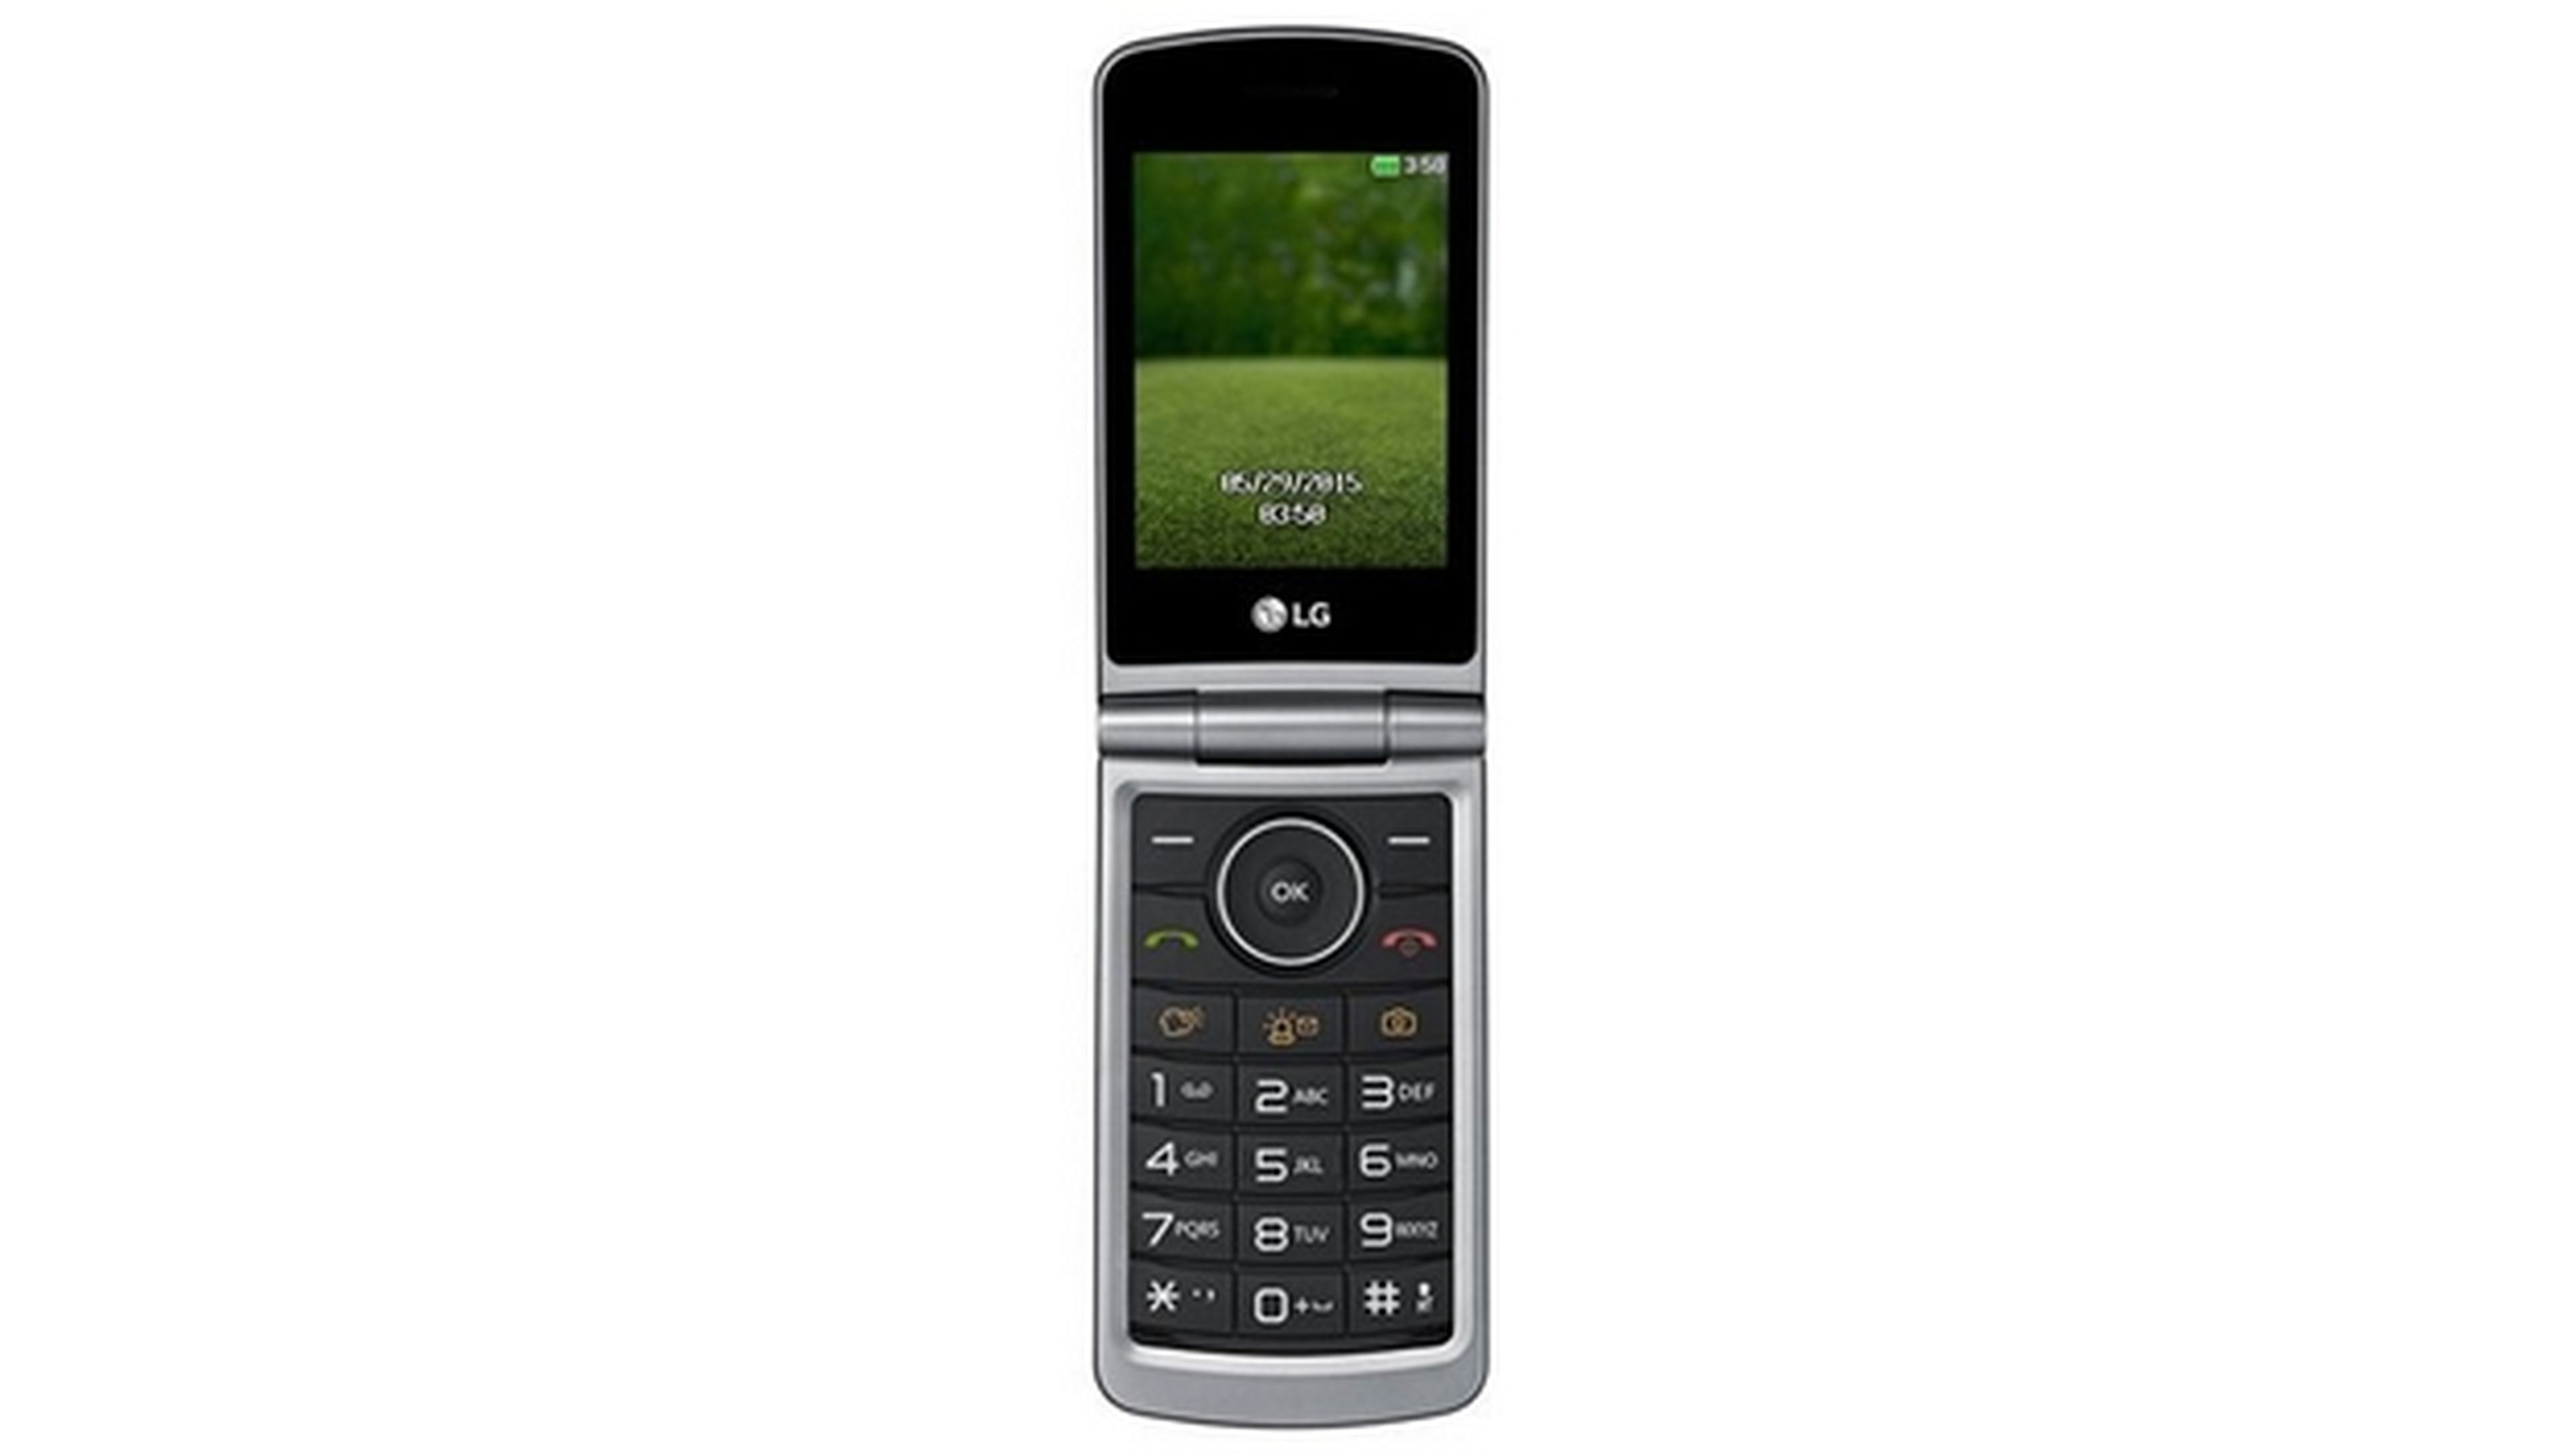 Mejores alternativas al Nokia 3310: móviles muy baratos (casi